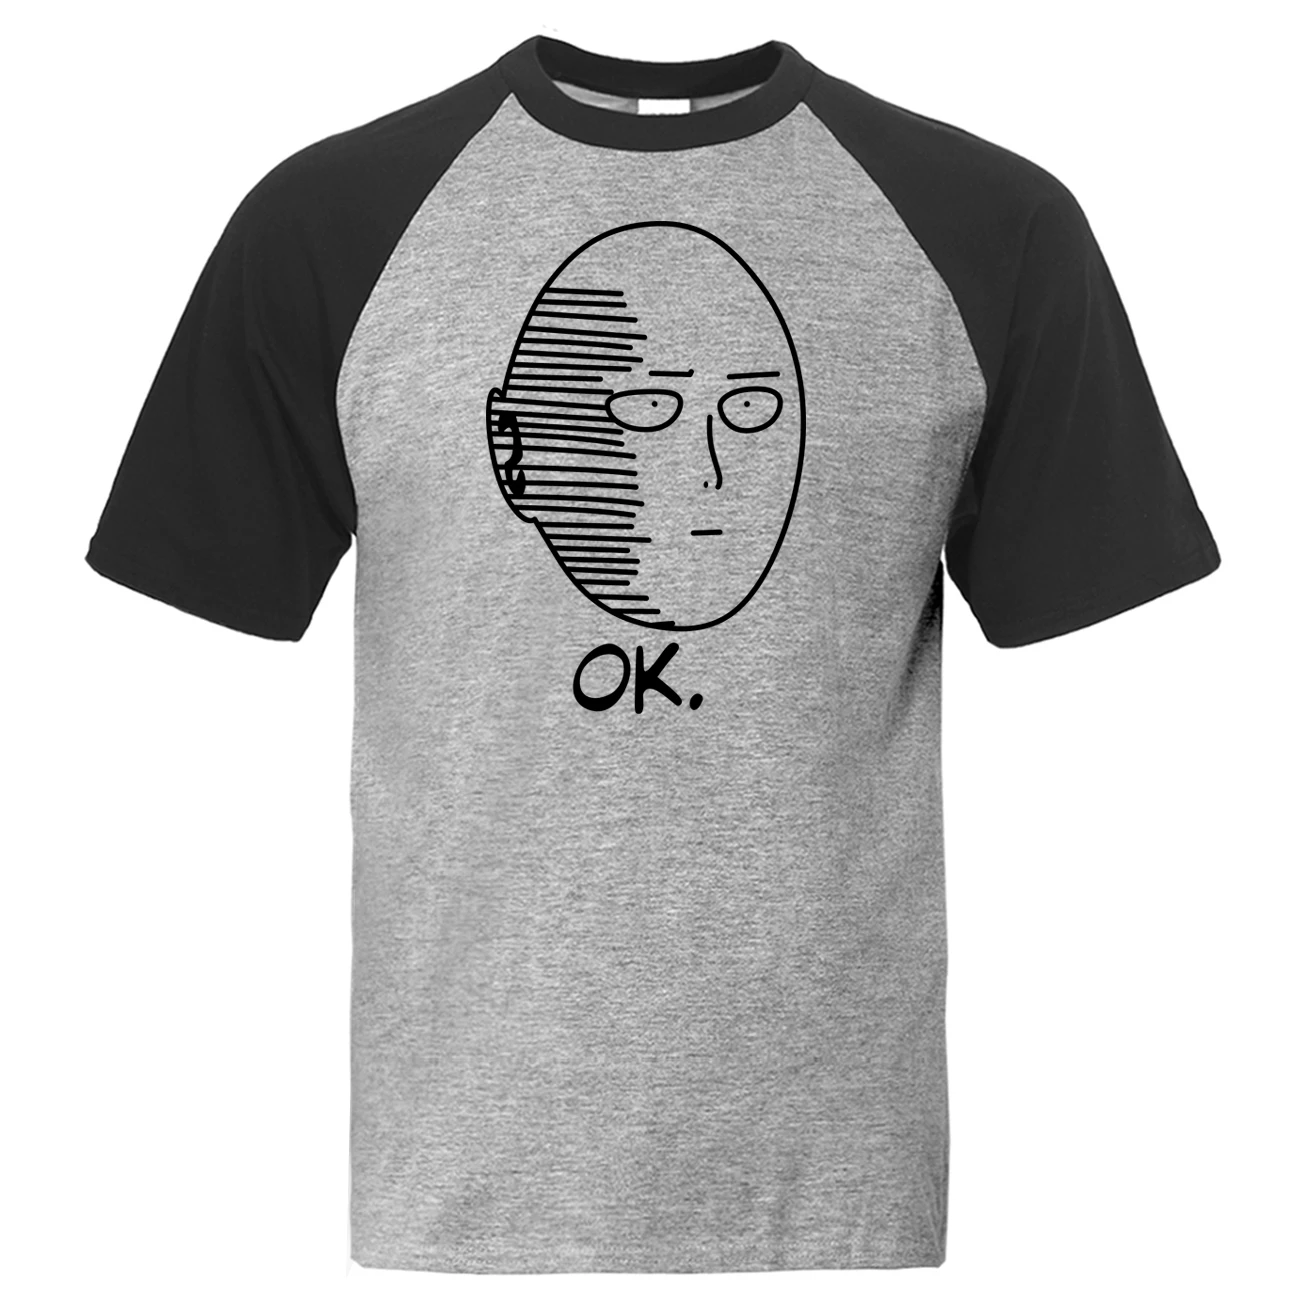 One Punch Man Saitama Футболка мужская OK реглан японского аниме футболка мультфильм футболки летние топы хлопок короткий рукав забавная футболка - Цвет: Black Gray  1